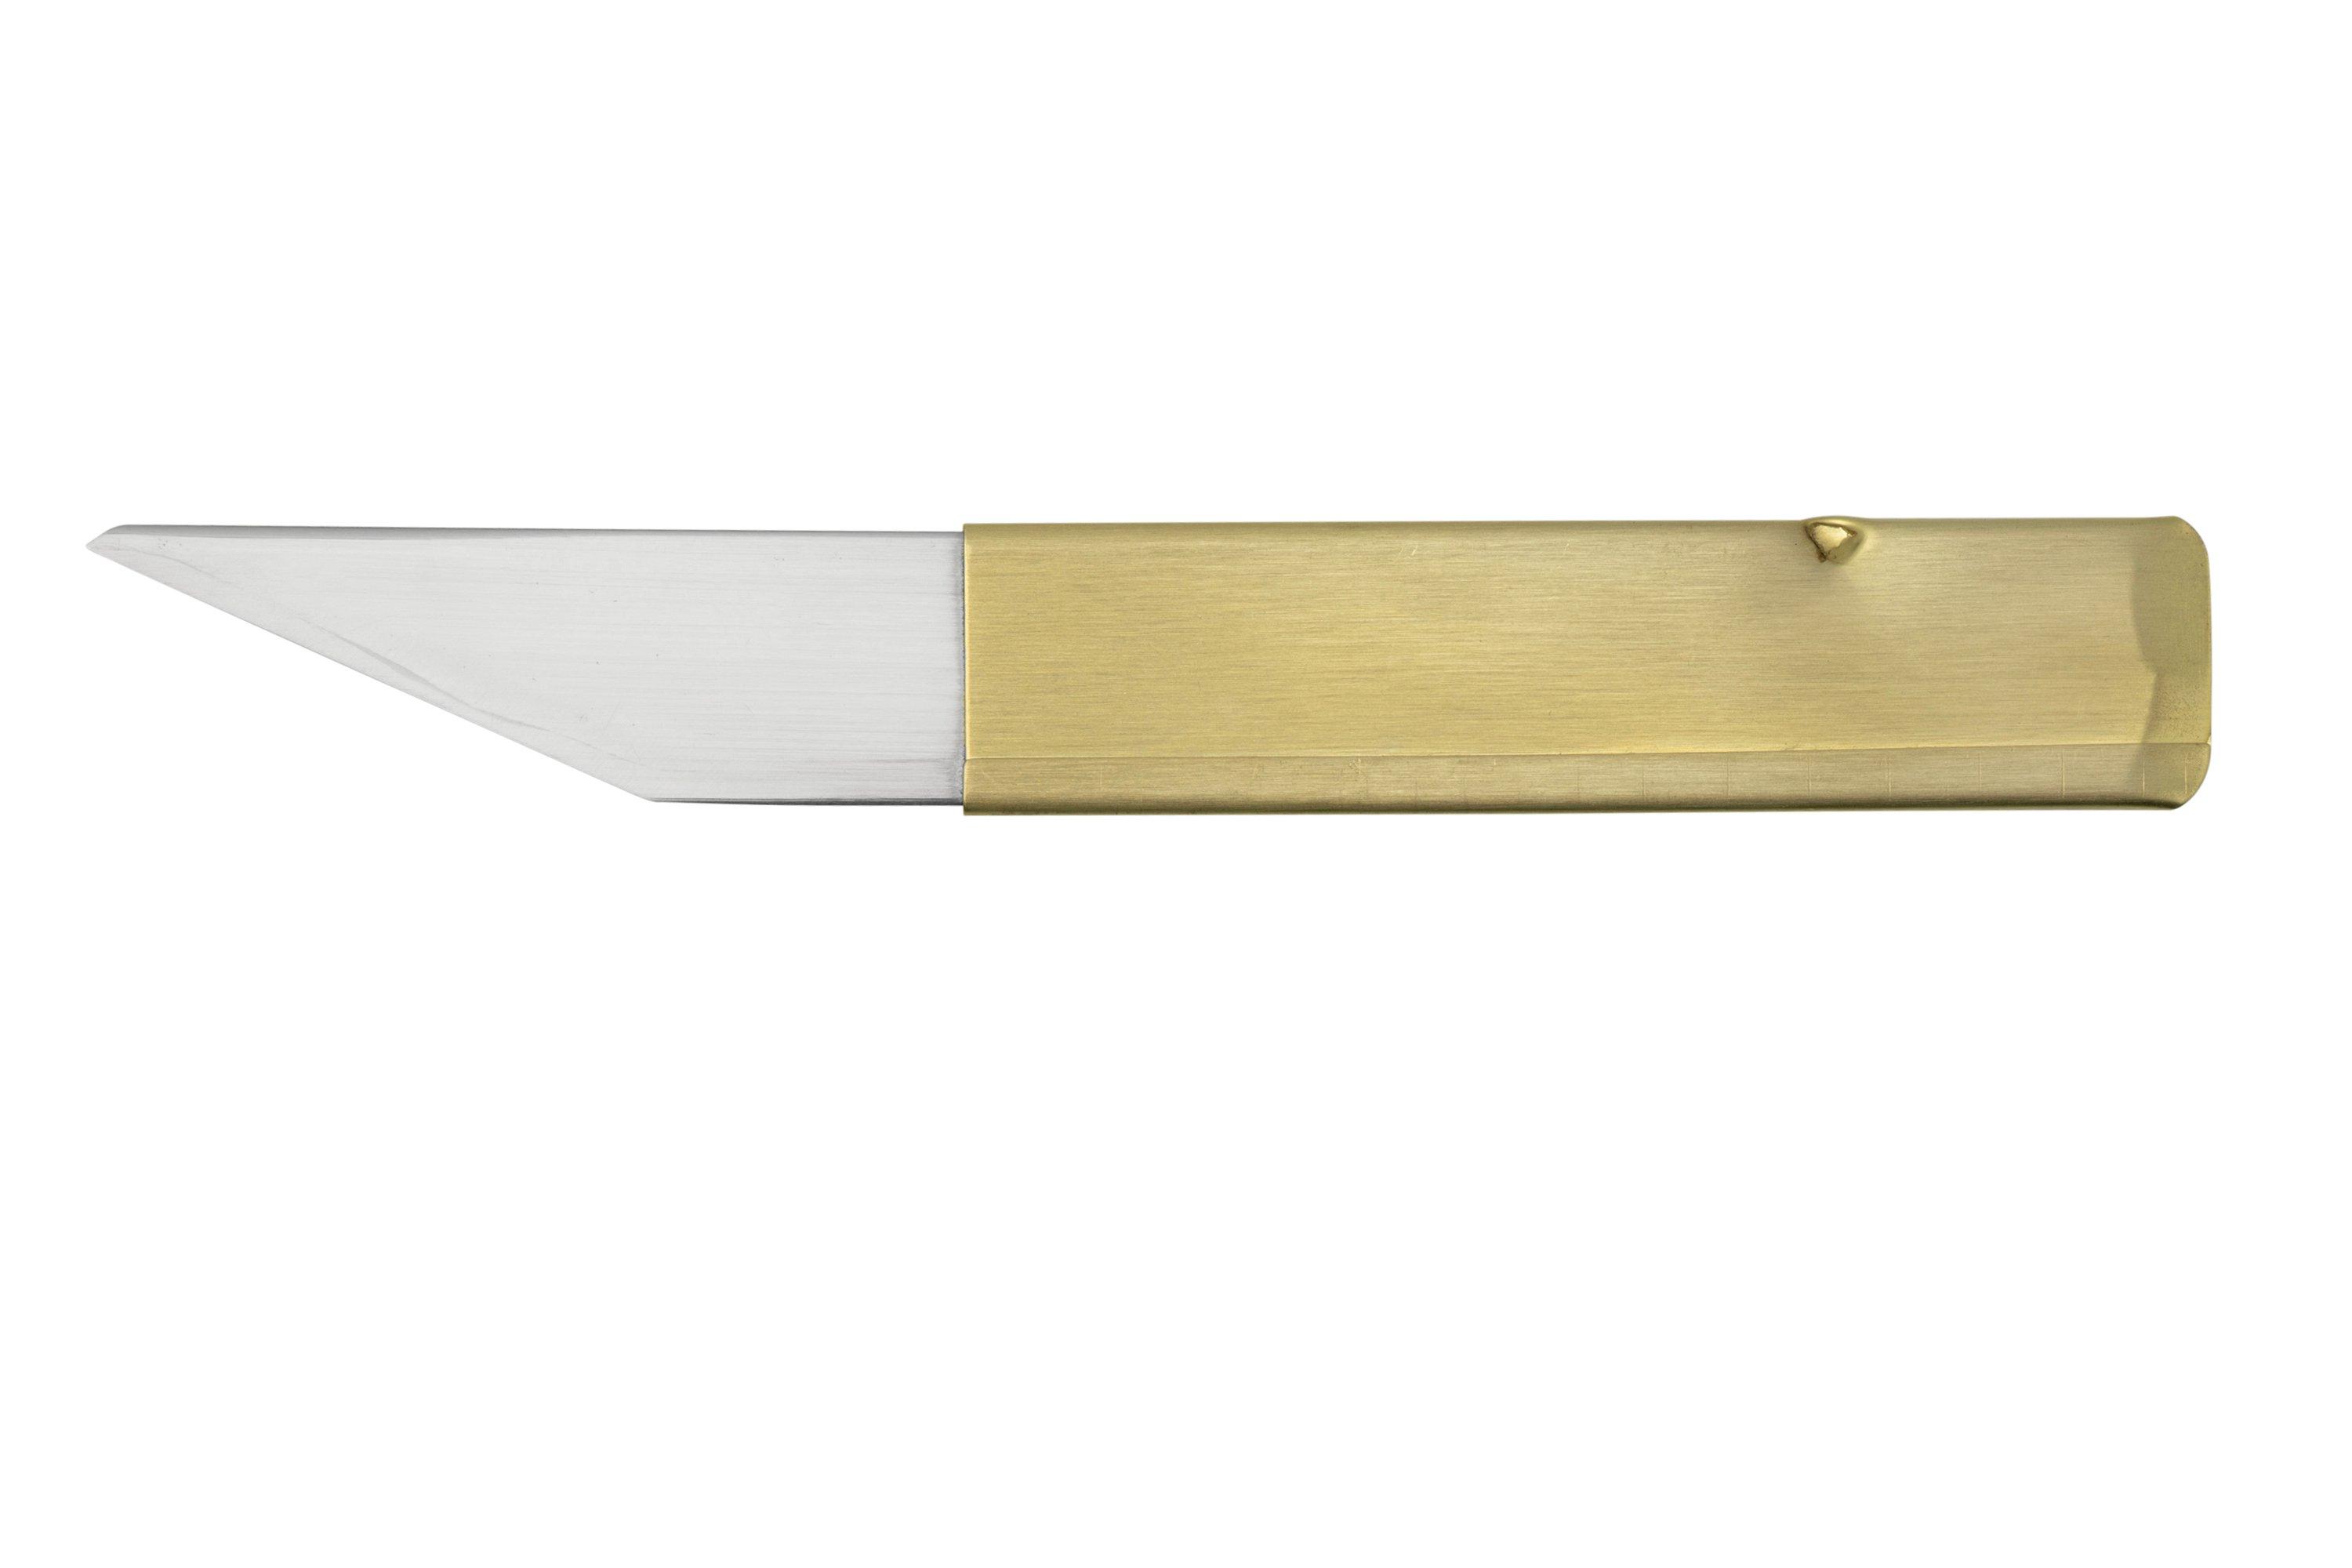 Kiridashi Woodcarving Knives